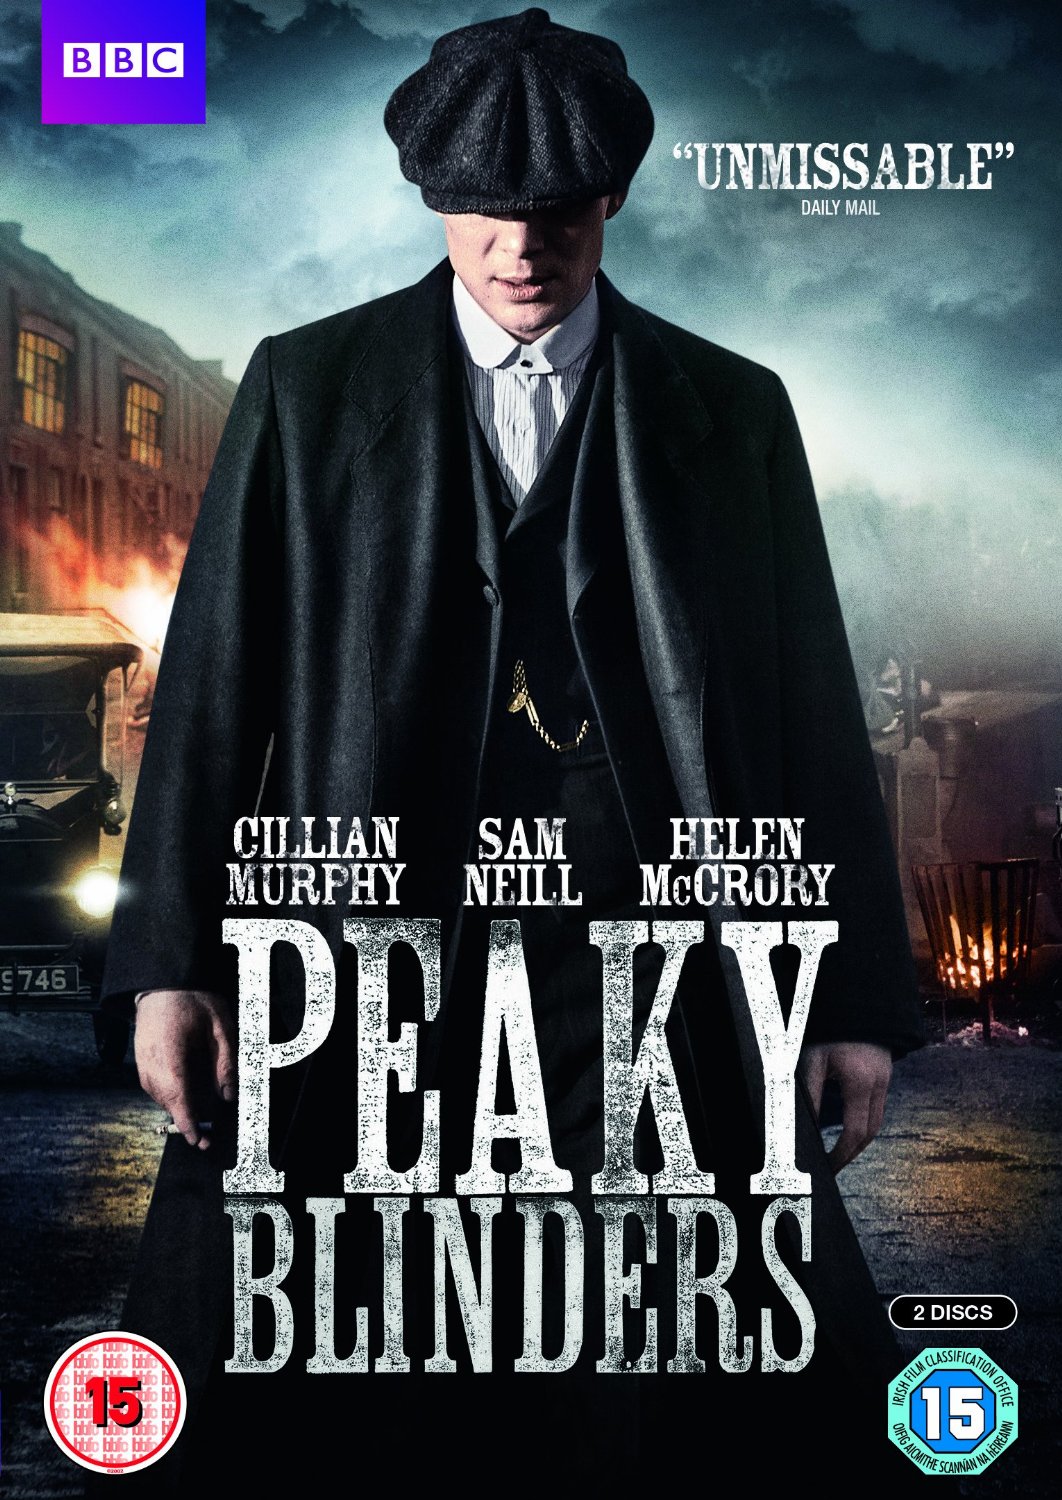 Watch Peaky Blinders Season 2 Online Watch Full Peaky Blinders Season 2 2014 Online For Free 